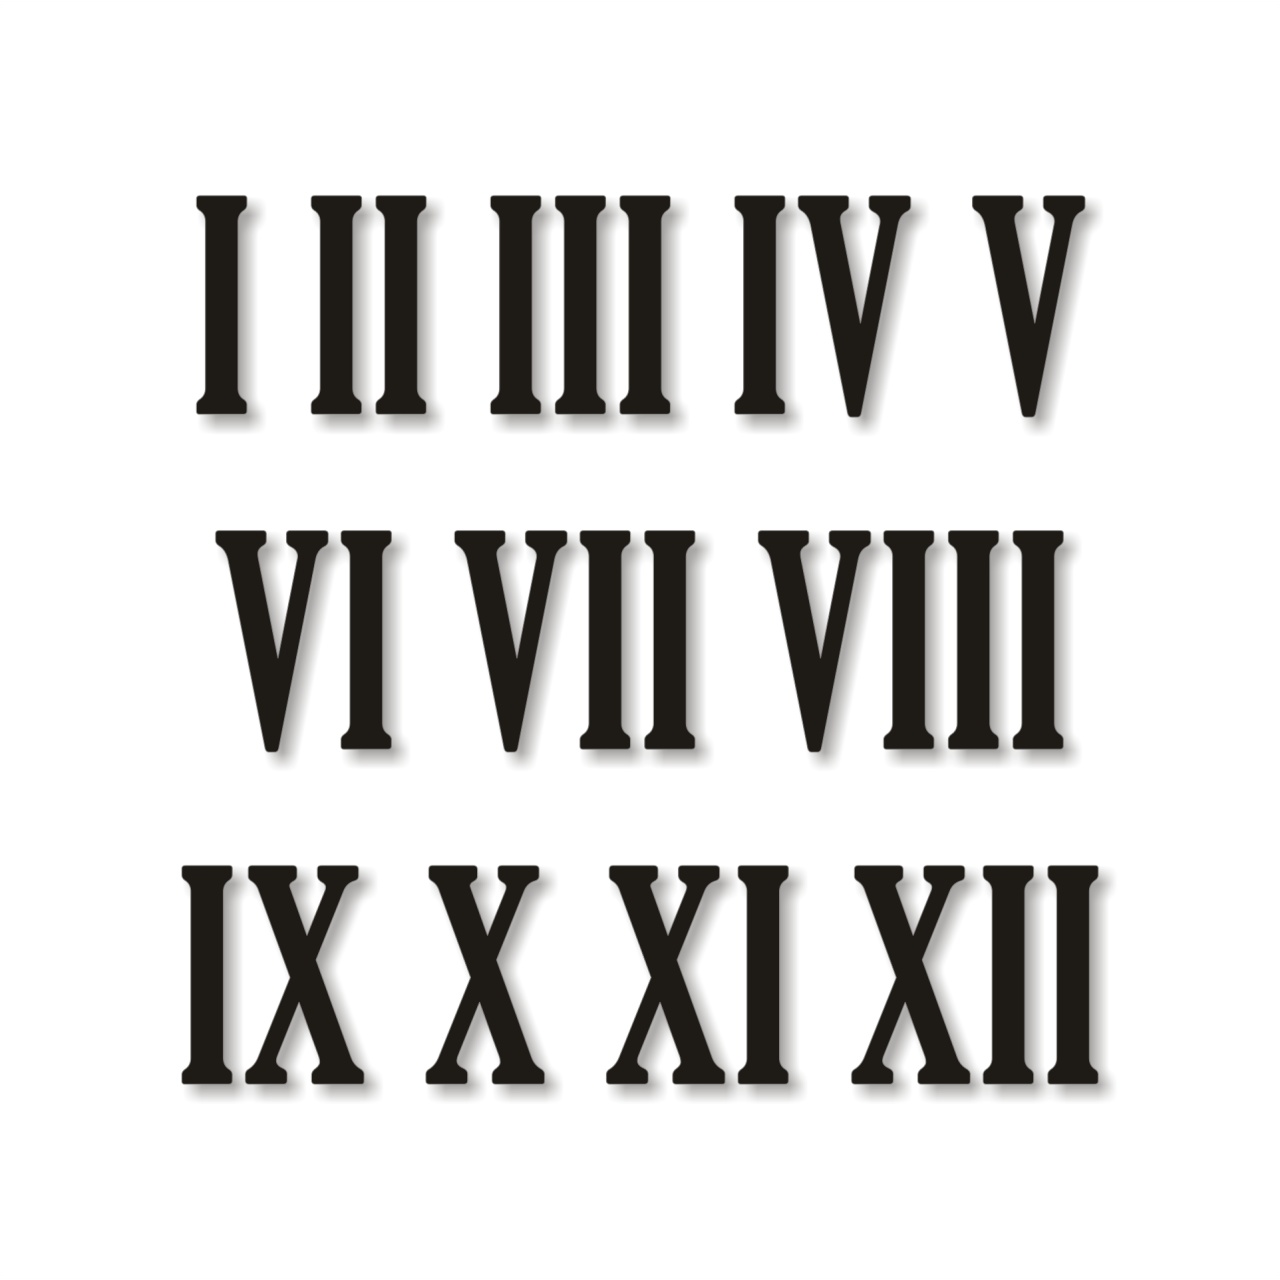 Cifre romane pentru ceas 1-12, 2 cm, HDF alb